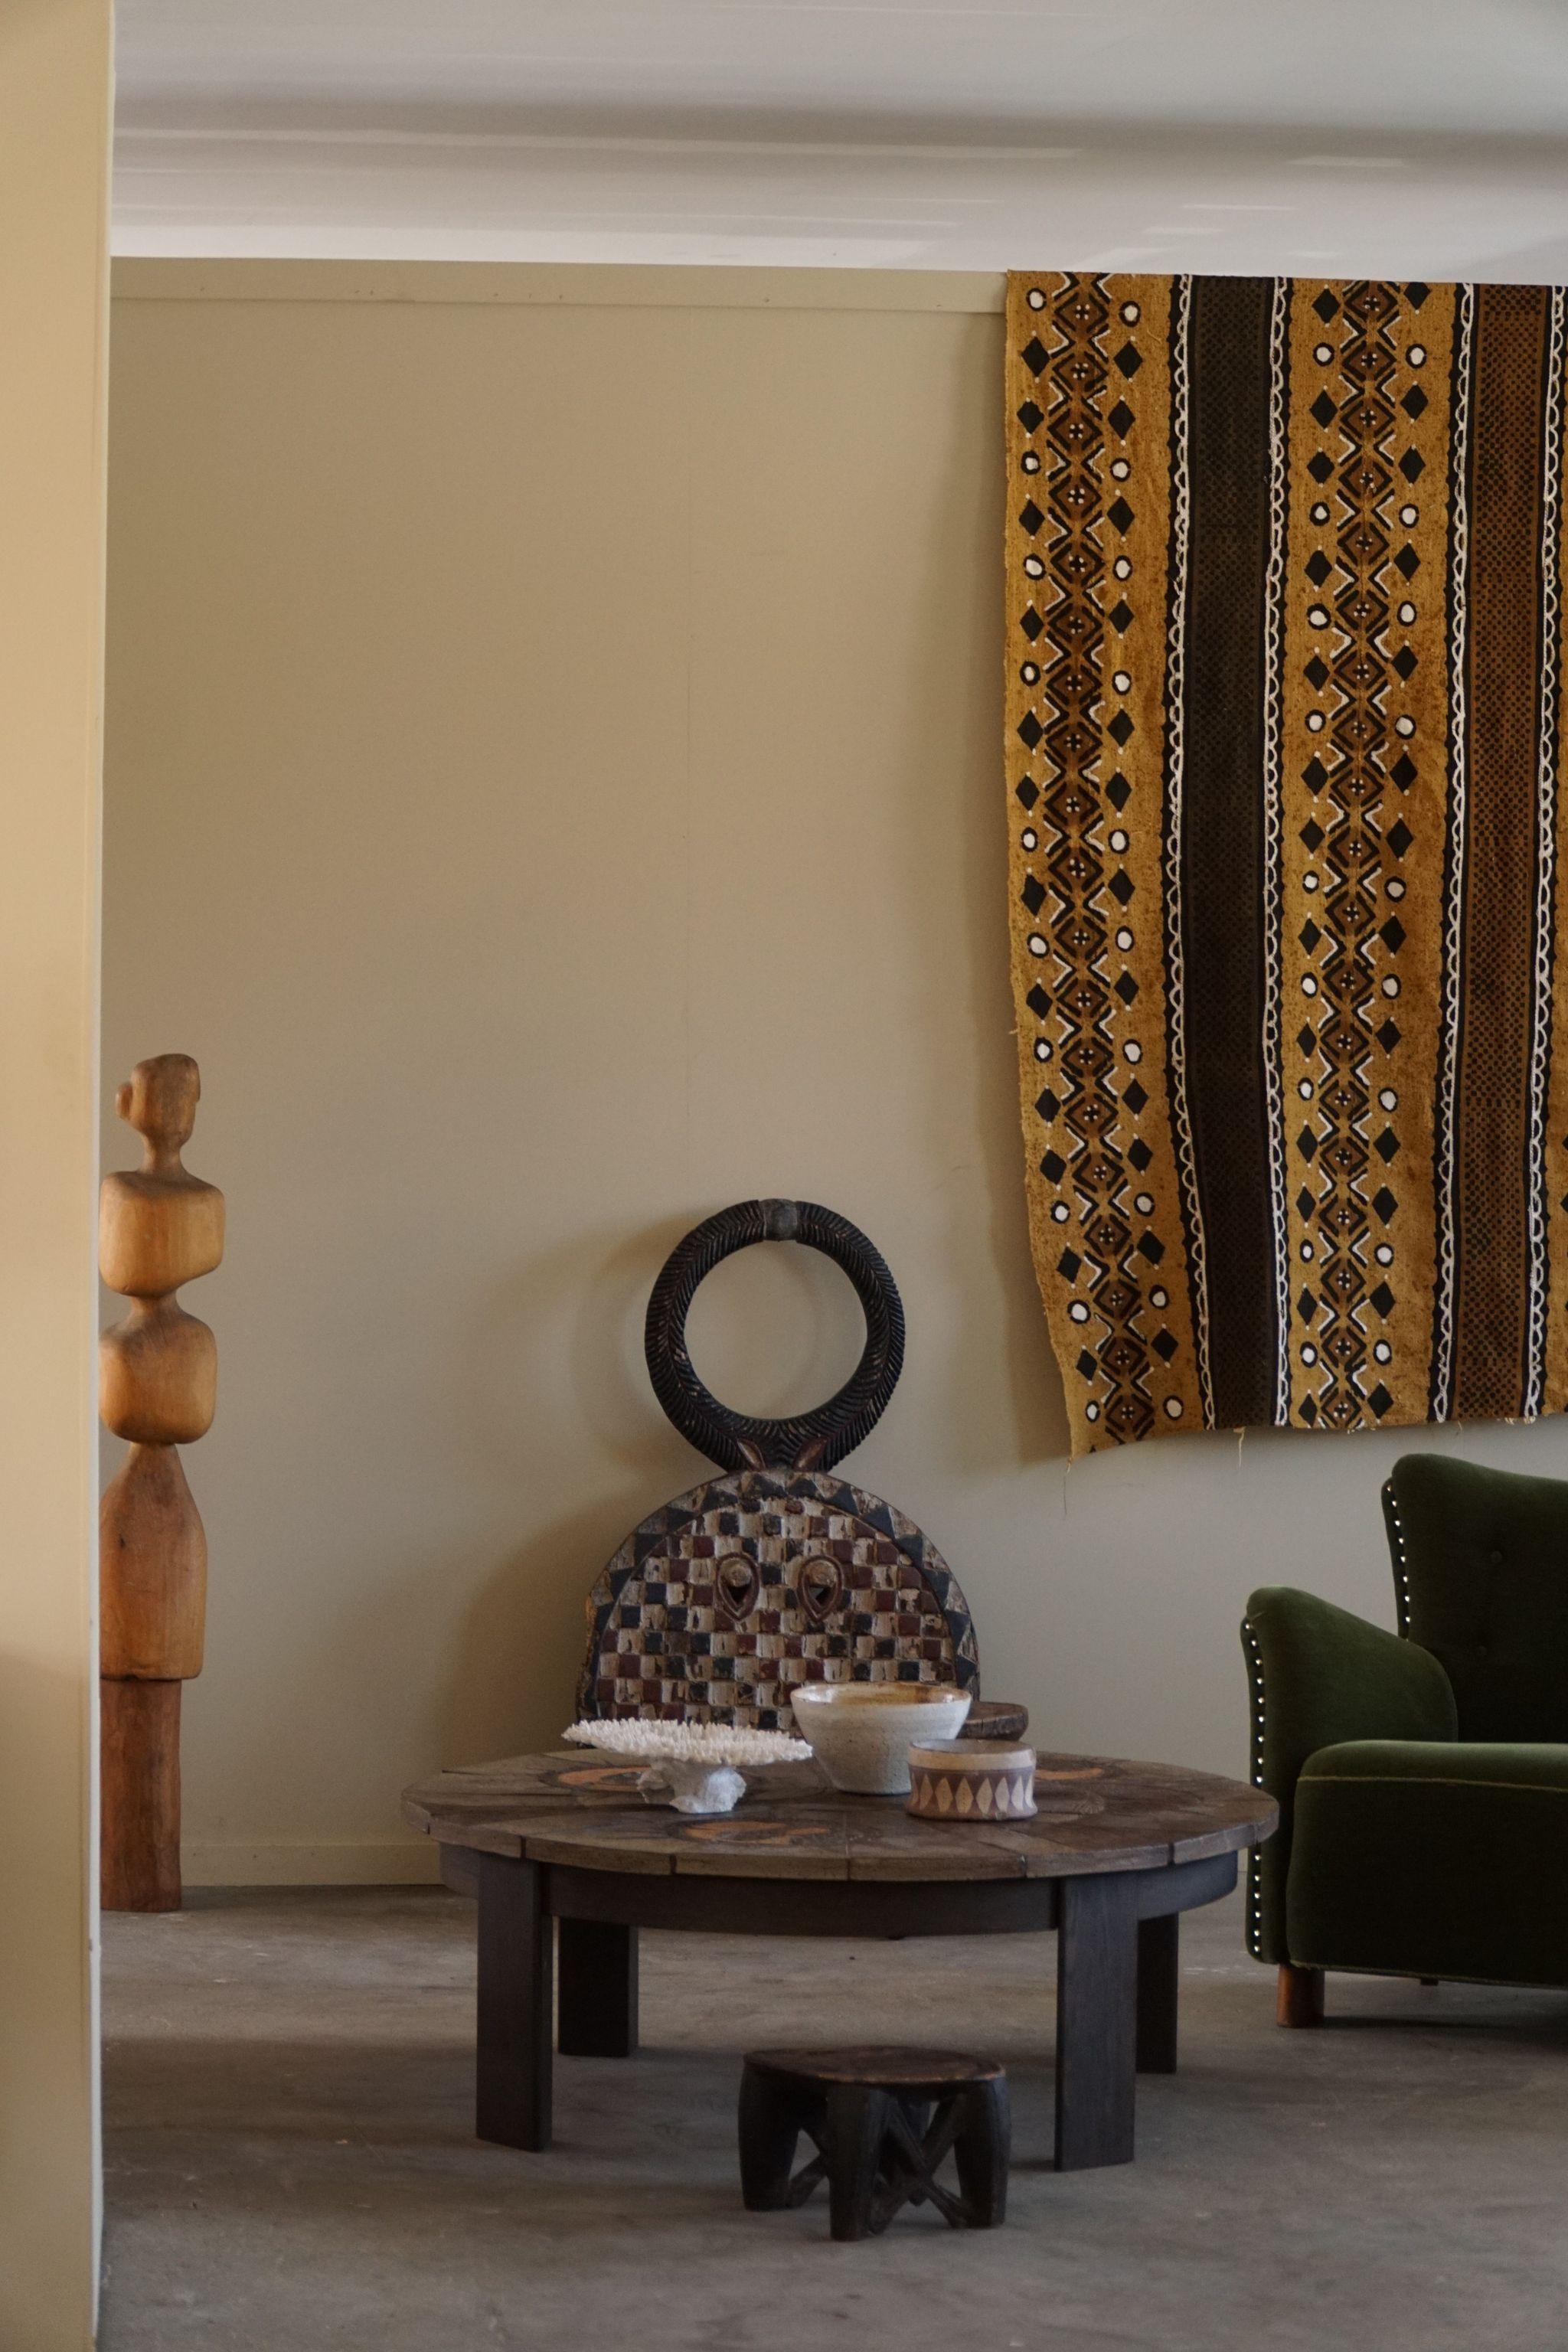 Une grande table basse ronde rustique / table de canapé en chêne massif avec des carreaux de céramique faits à la main. Fabriqué au Danemark dans les années 1970, signé par l'artiste.

Cette jolie table s'harmonise avec de nombreux styles